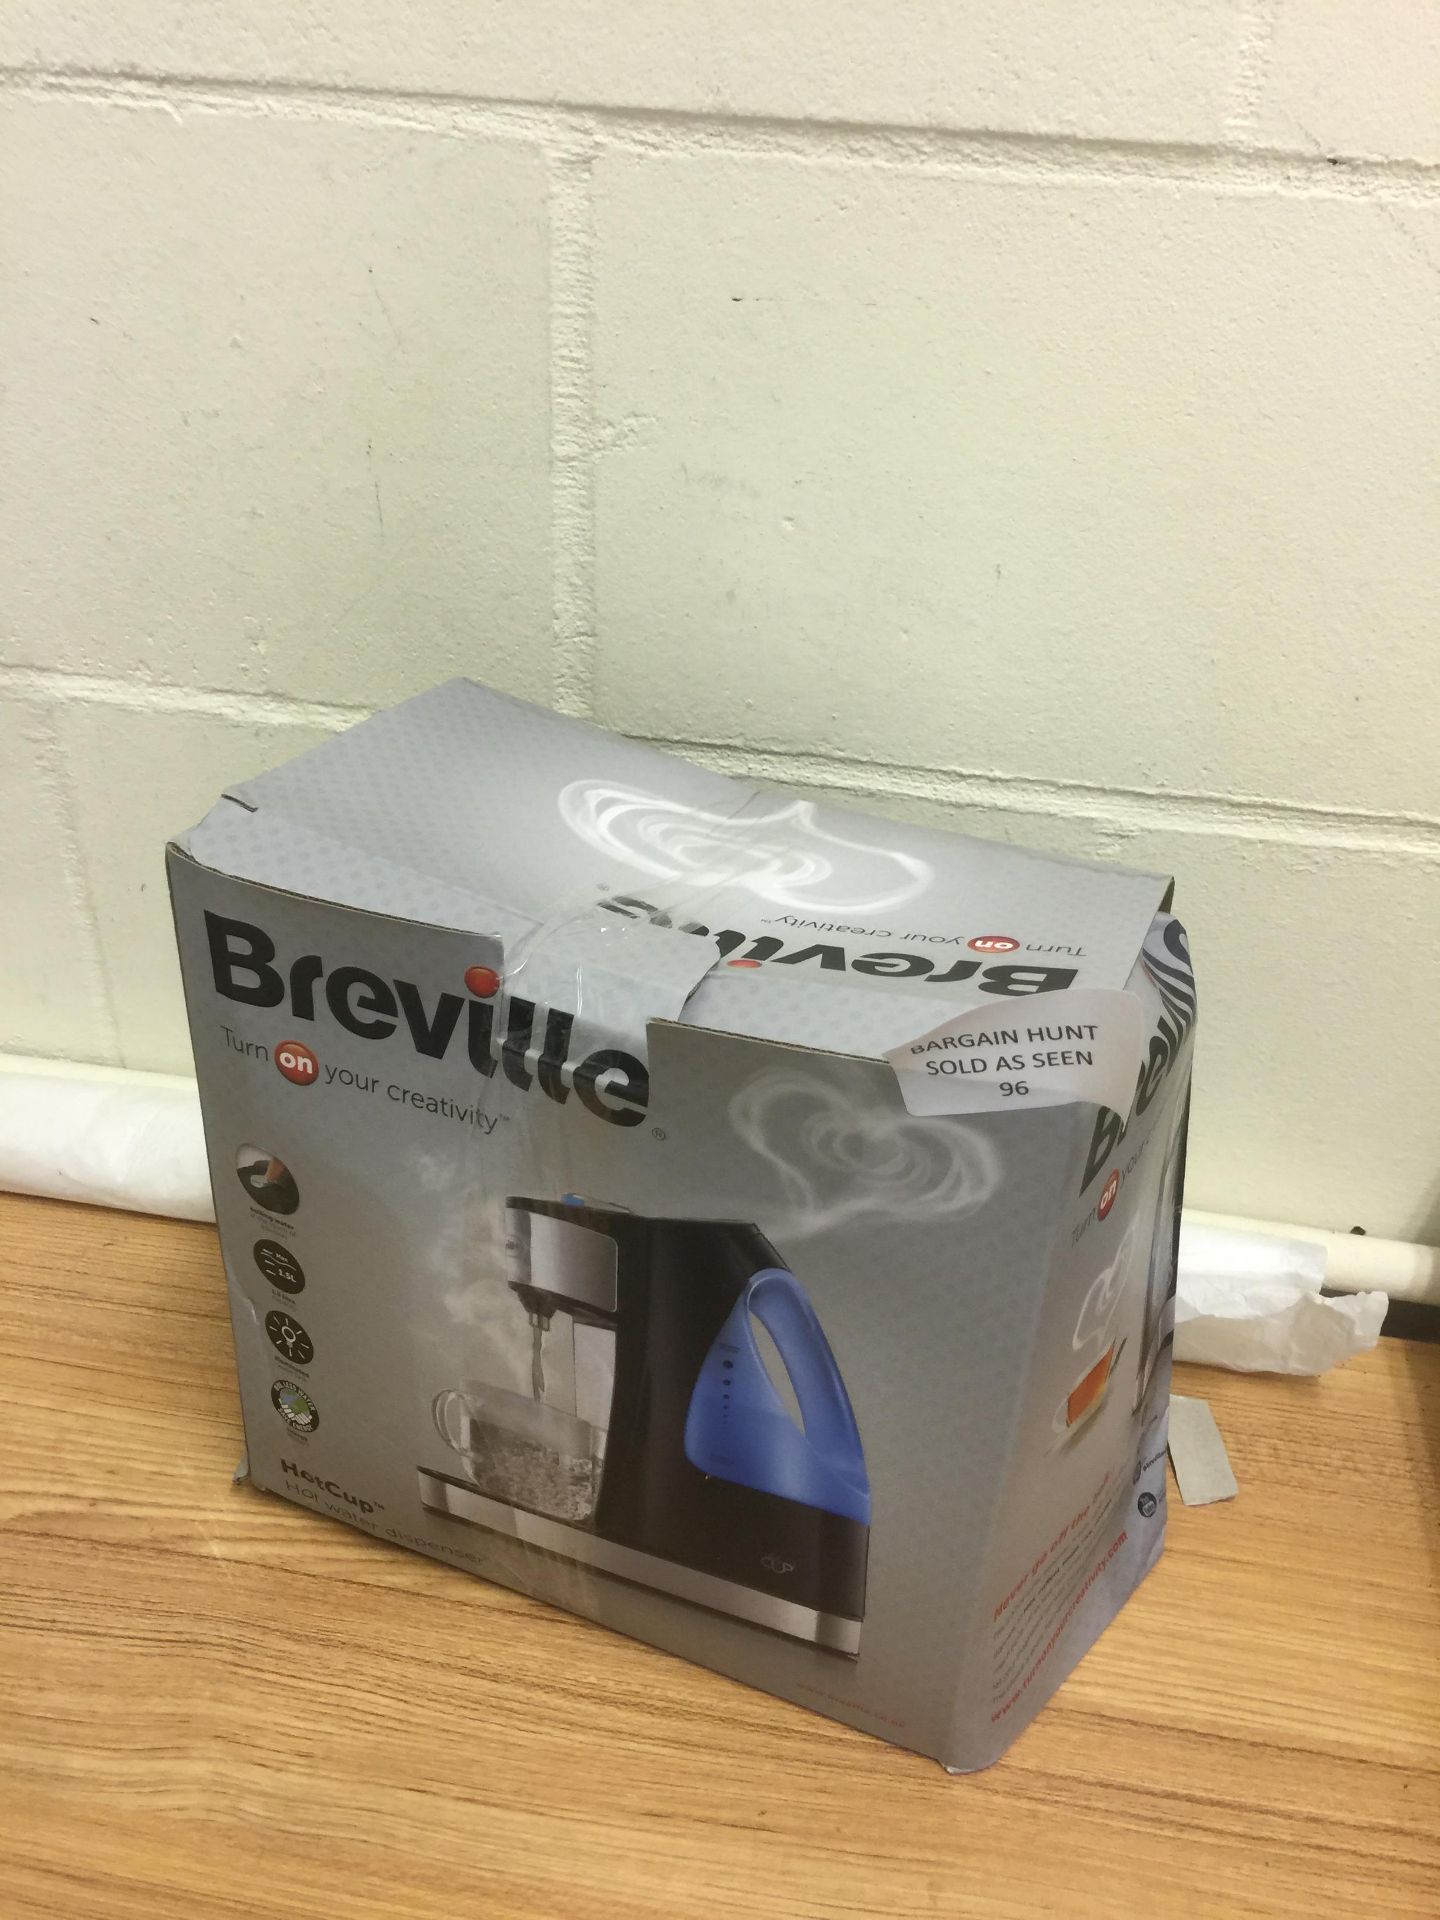 Breville Hot Cup Hot Water Dispenser